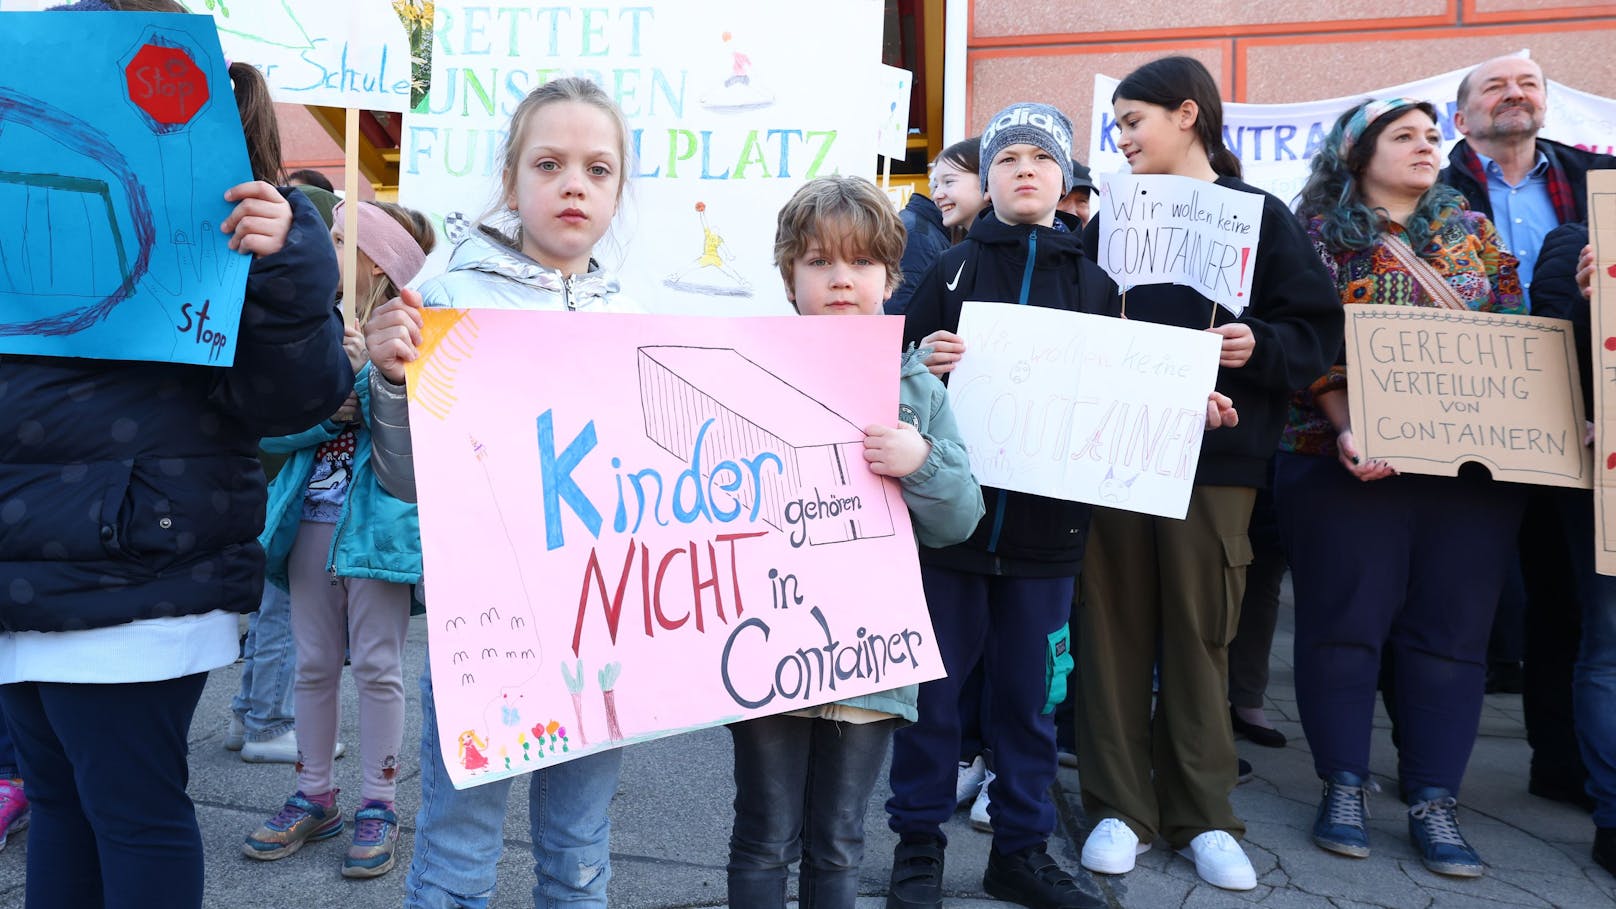 "Kinder gehören nicht in Container" – erneuter Aufstand